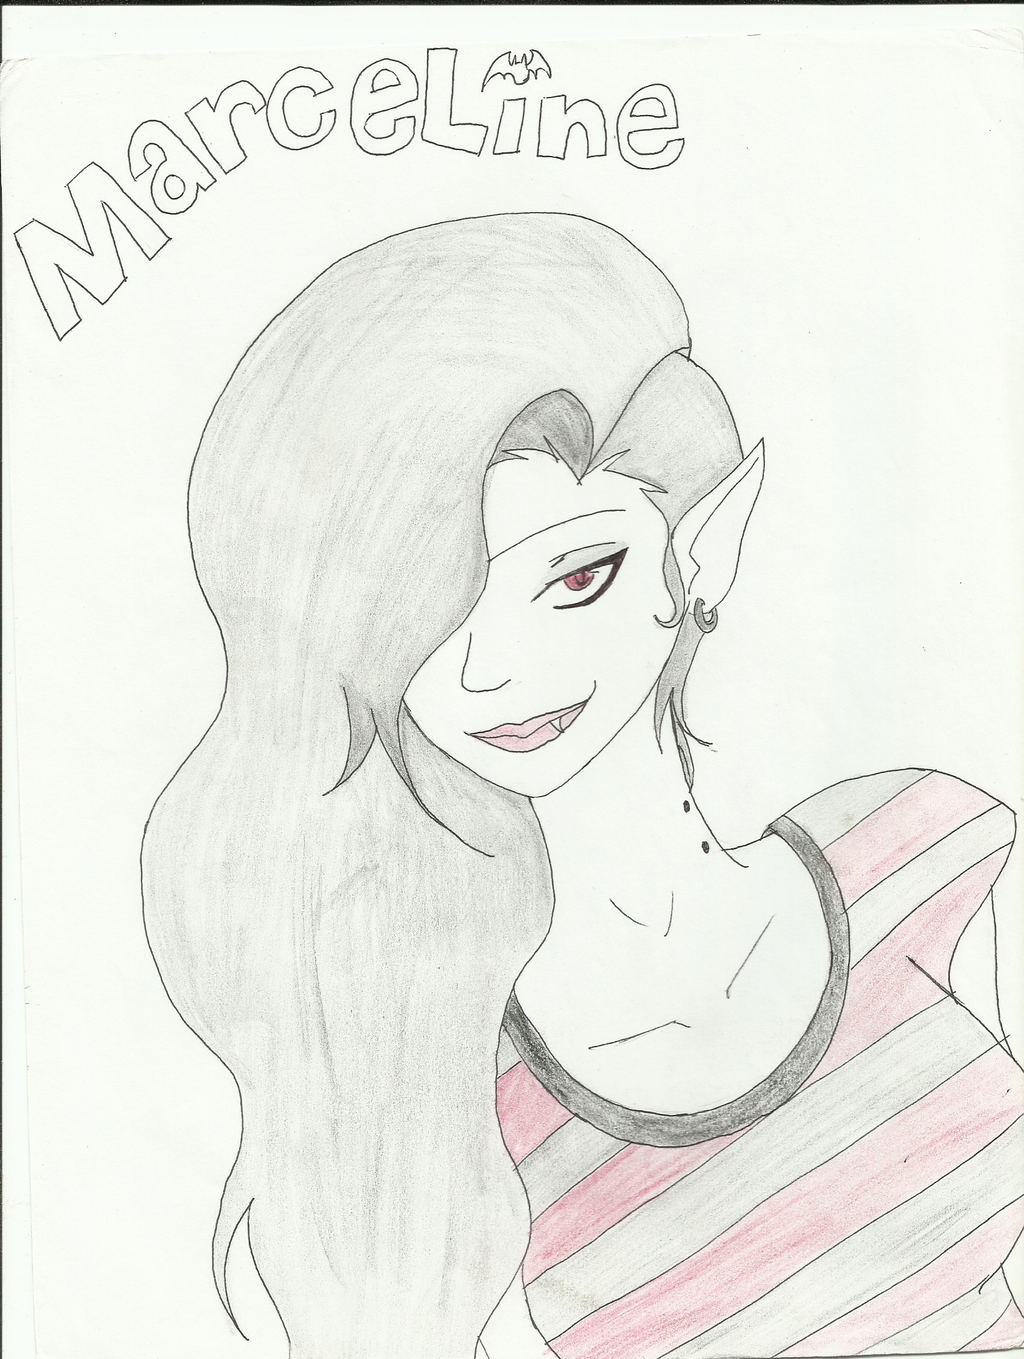 Marceline The Vampire Queen